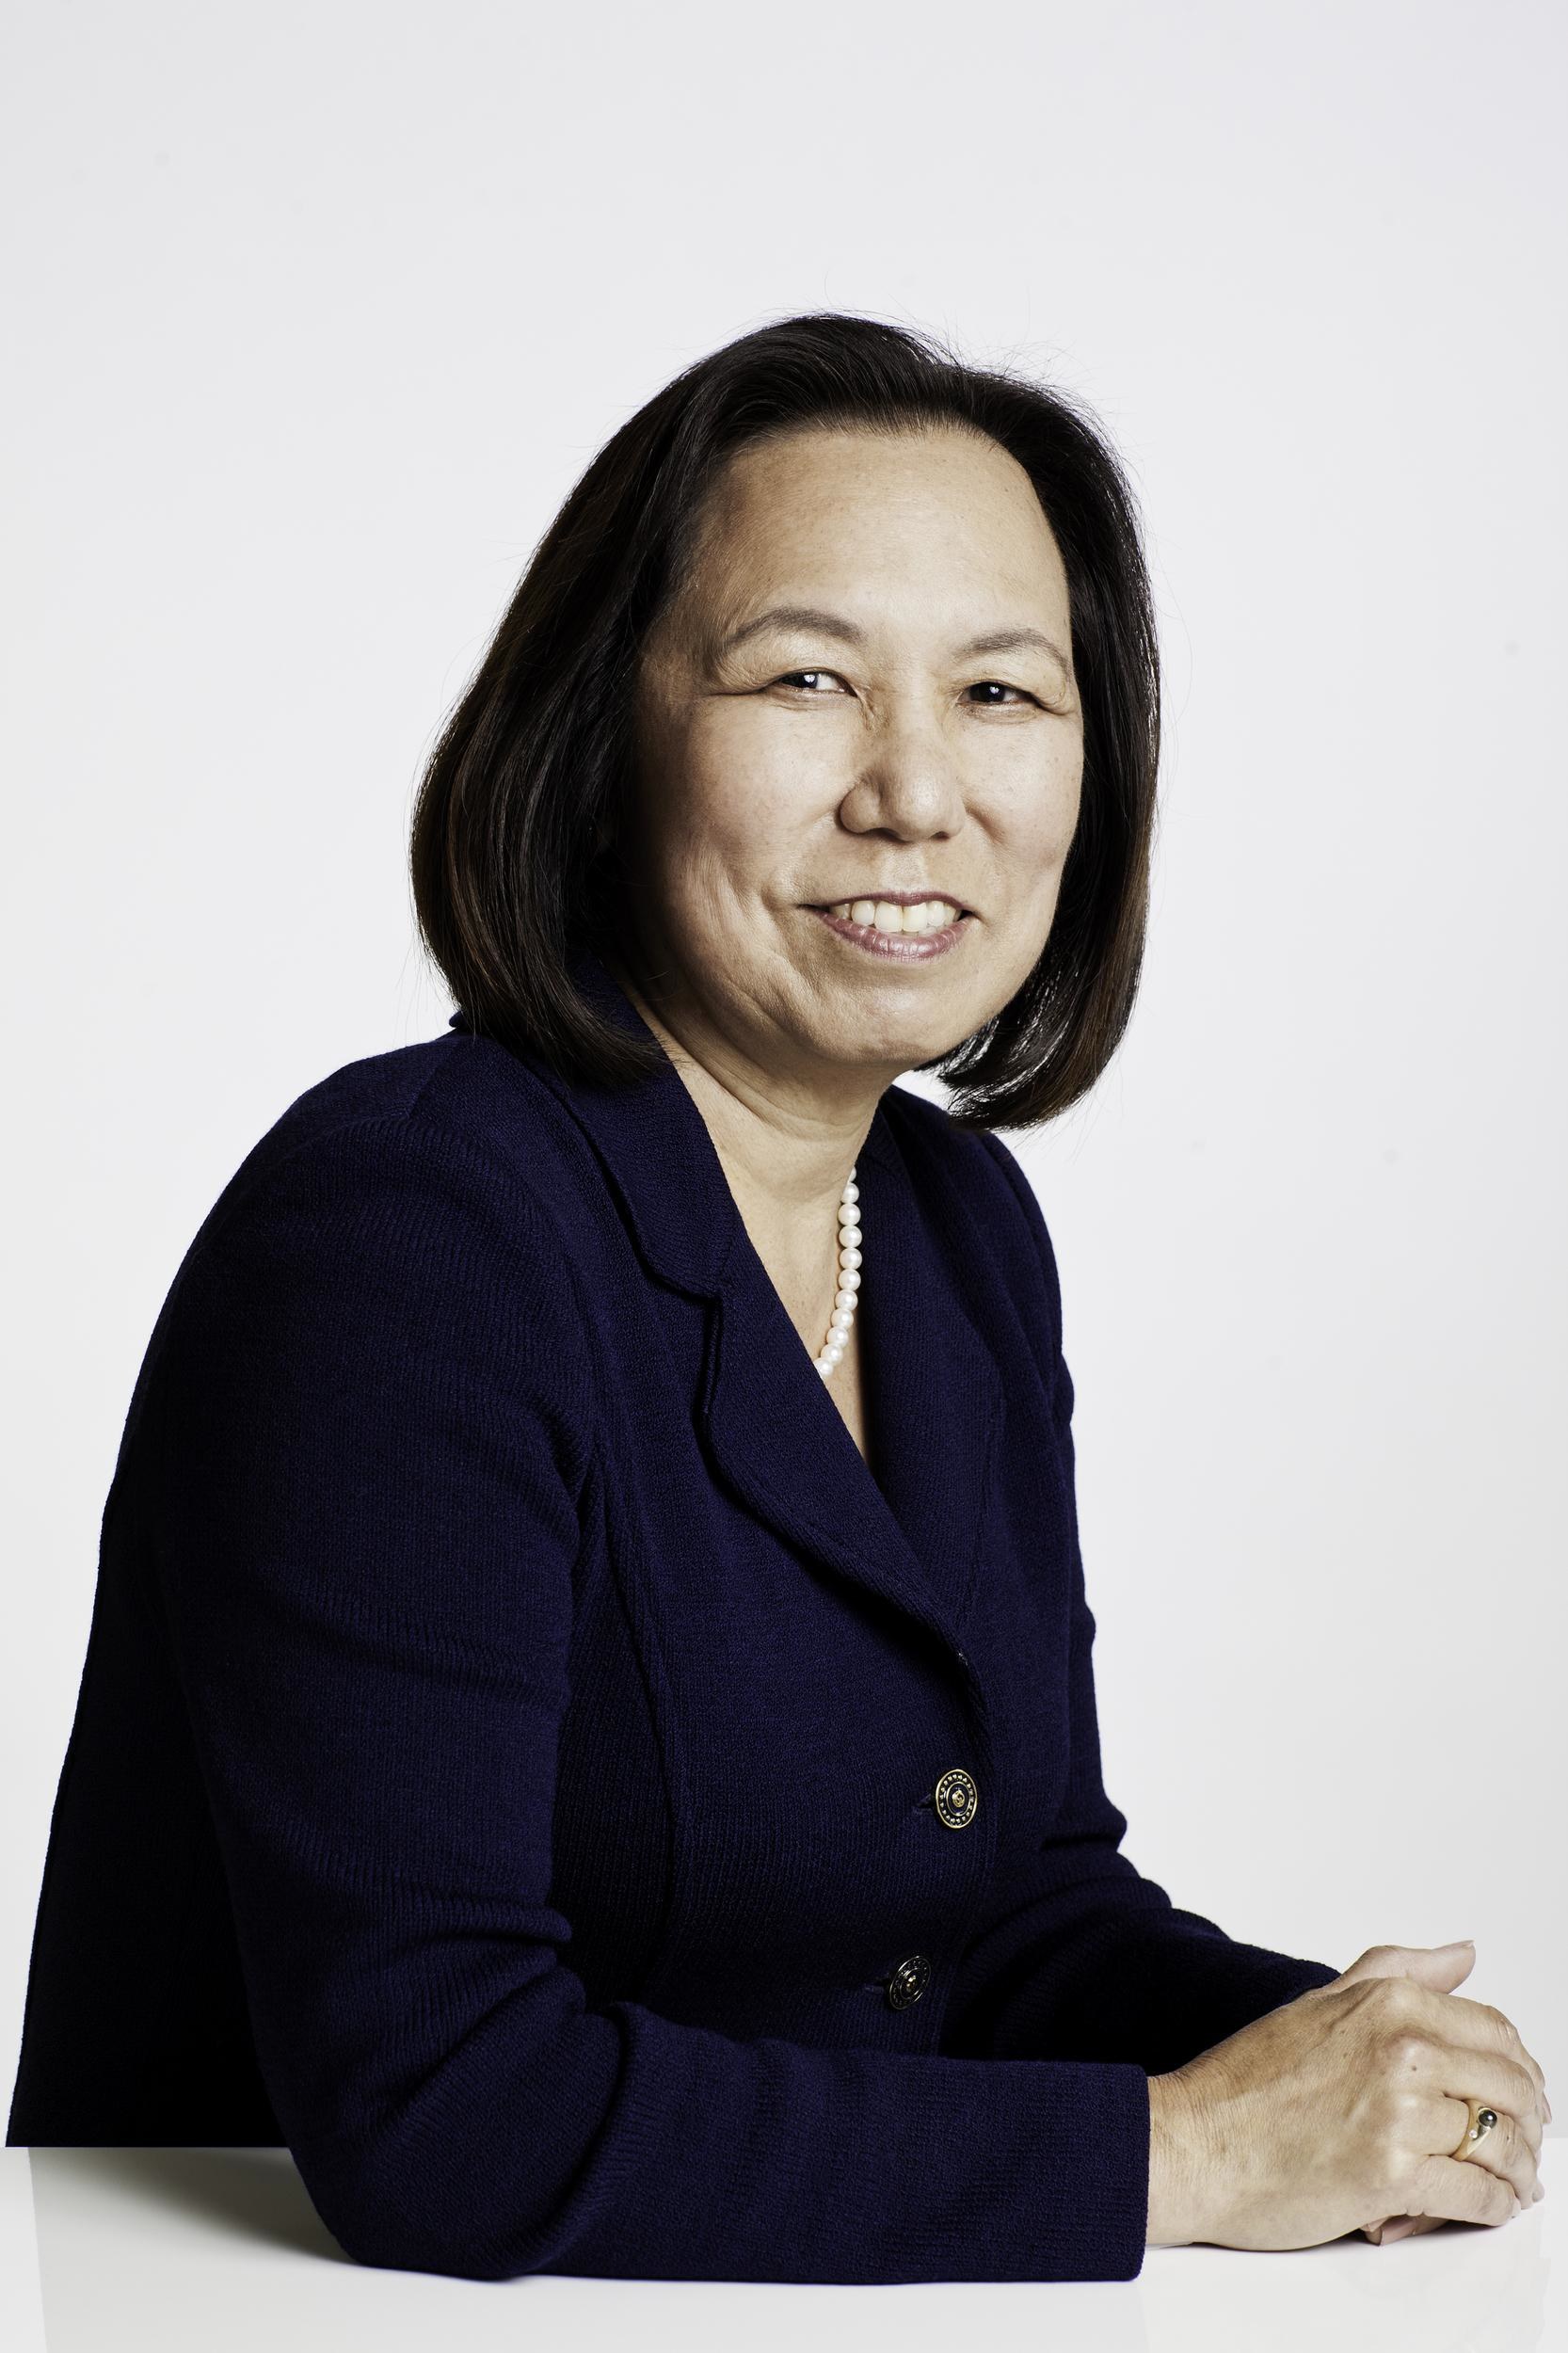 Dr. Judy K. Sakaki